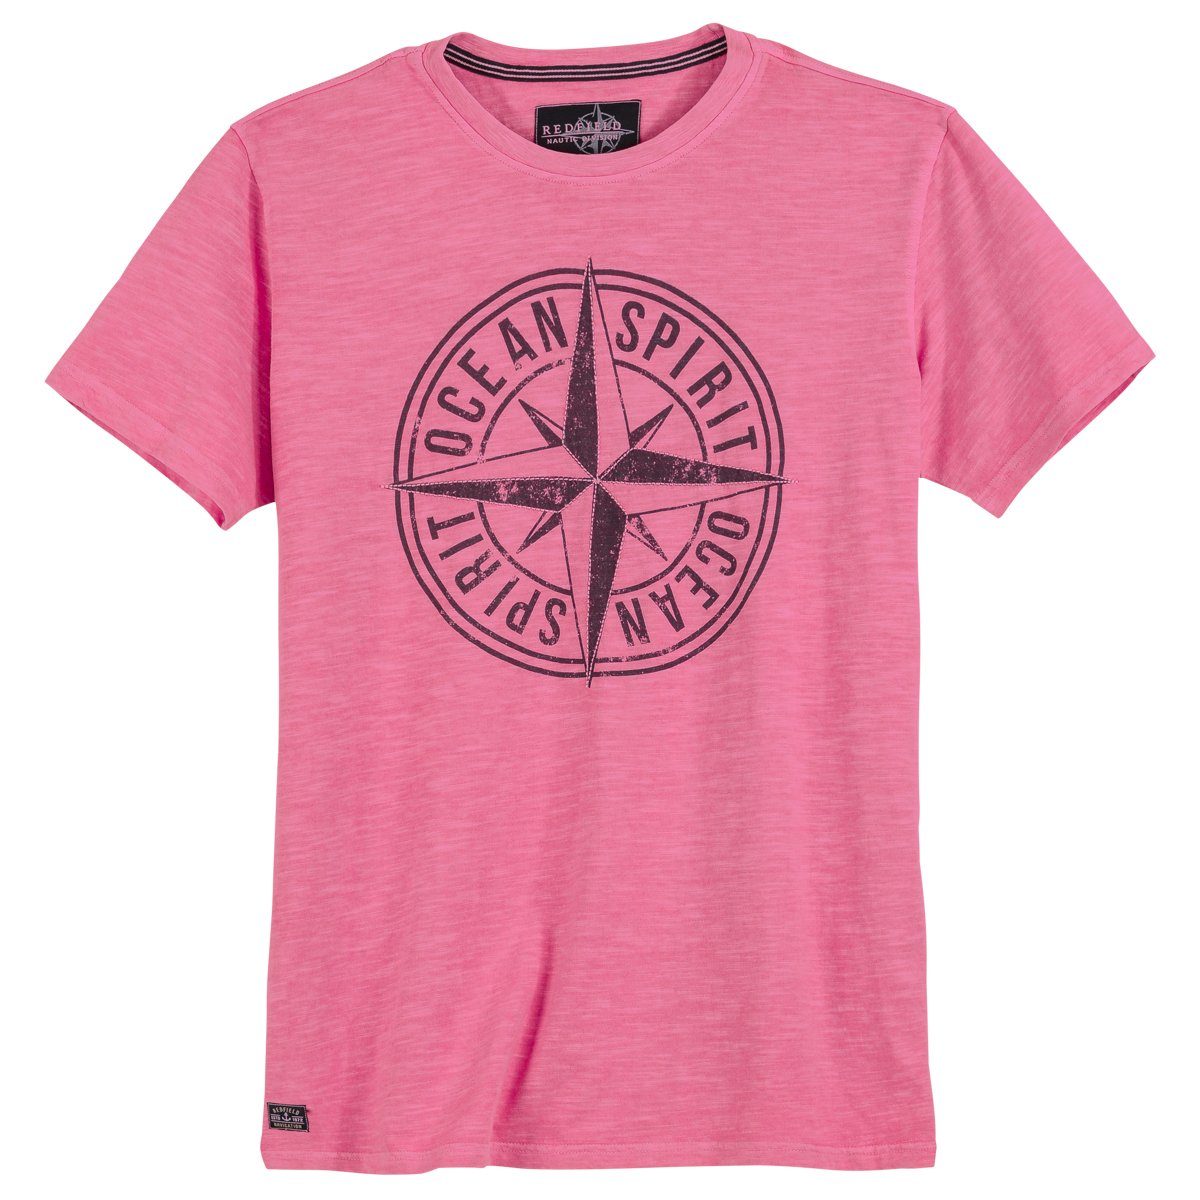 redfield Rundhalsshirt Große Größen T-Shirt pink used Kompass-Print Redfield